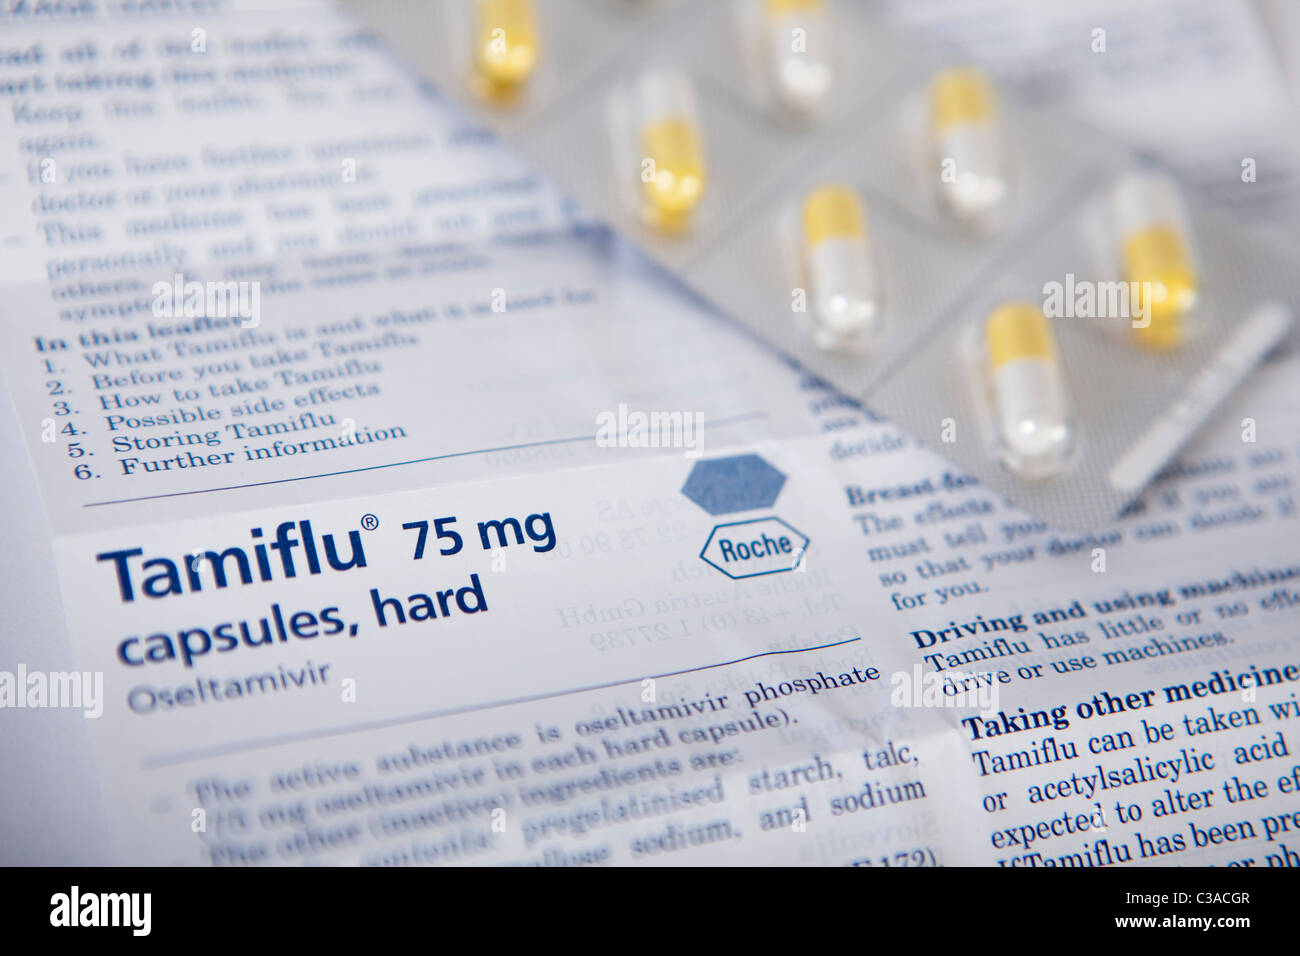 Imagen ilustrativa de Tamiflu folleto informativo y tablet pack. Foto de stock